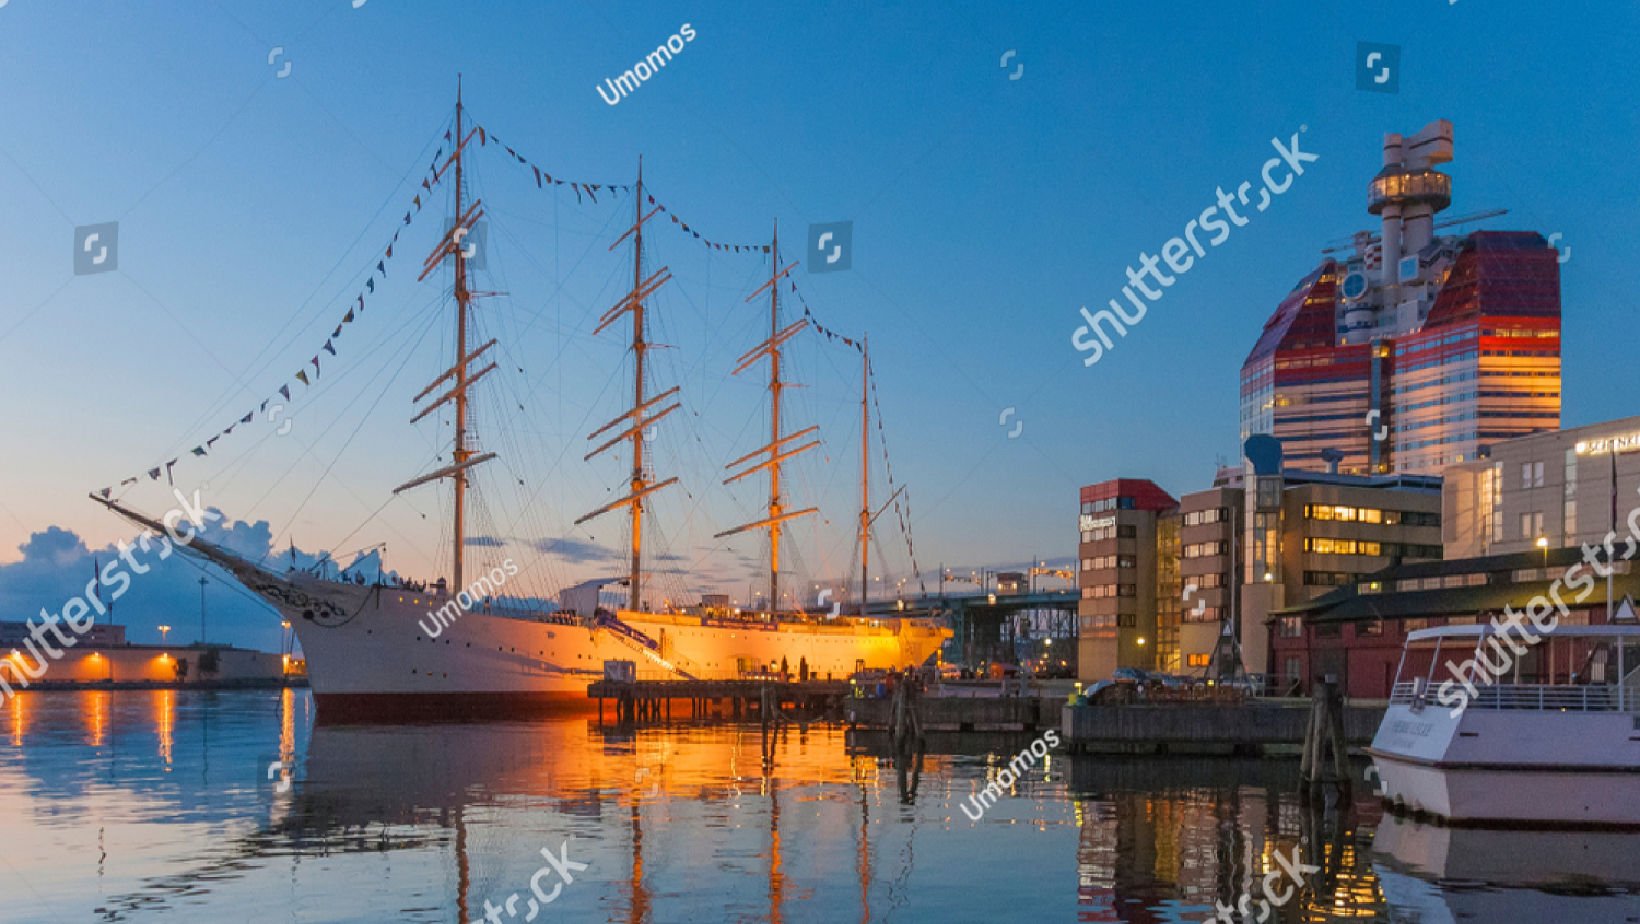 Gothenburg harbour in Sweden.